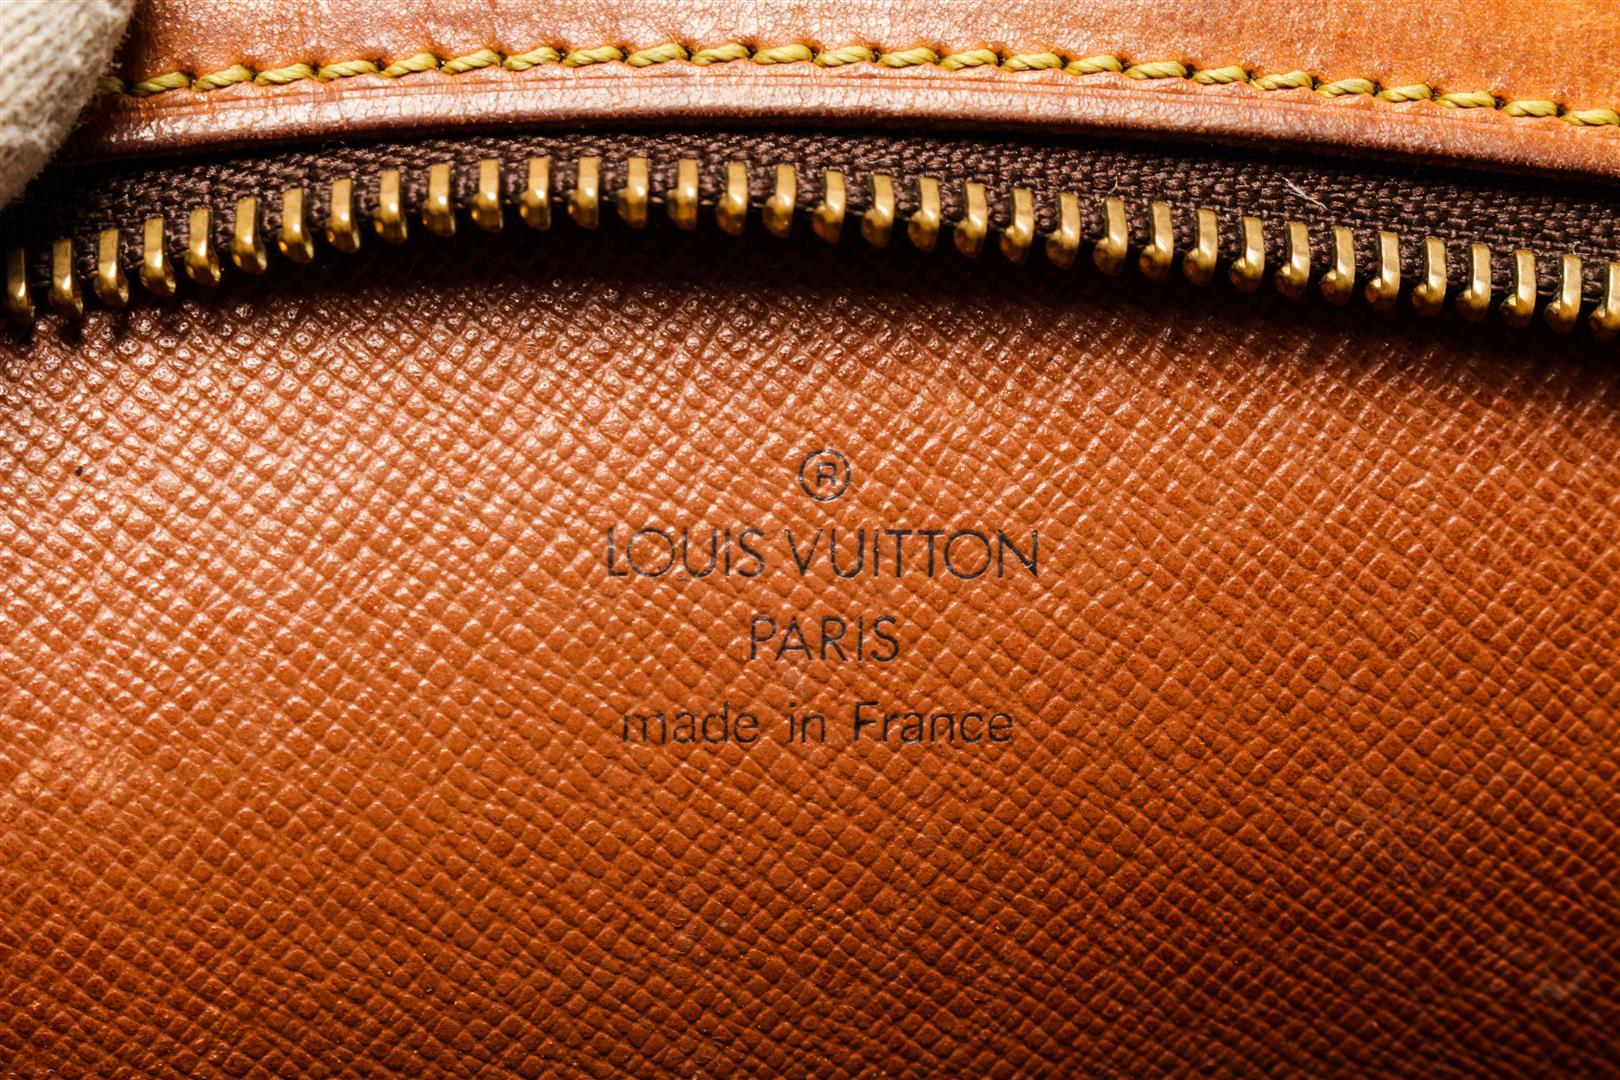 Louis Vuitton Brown Monogram Canvas Drouot Shoulder Bag